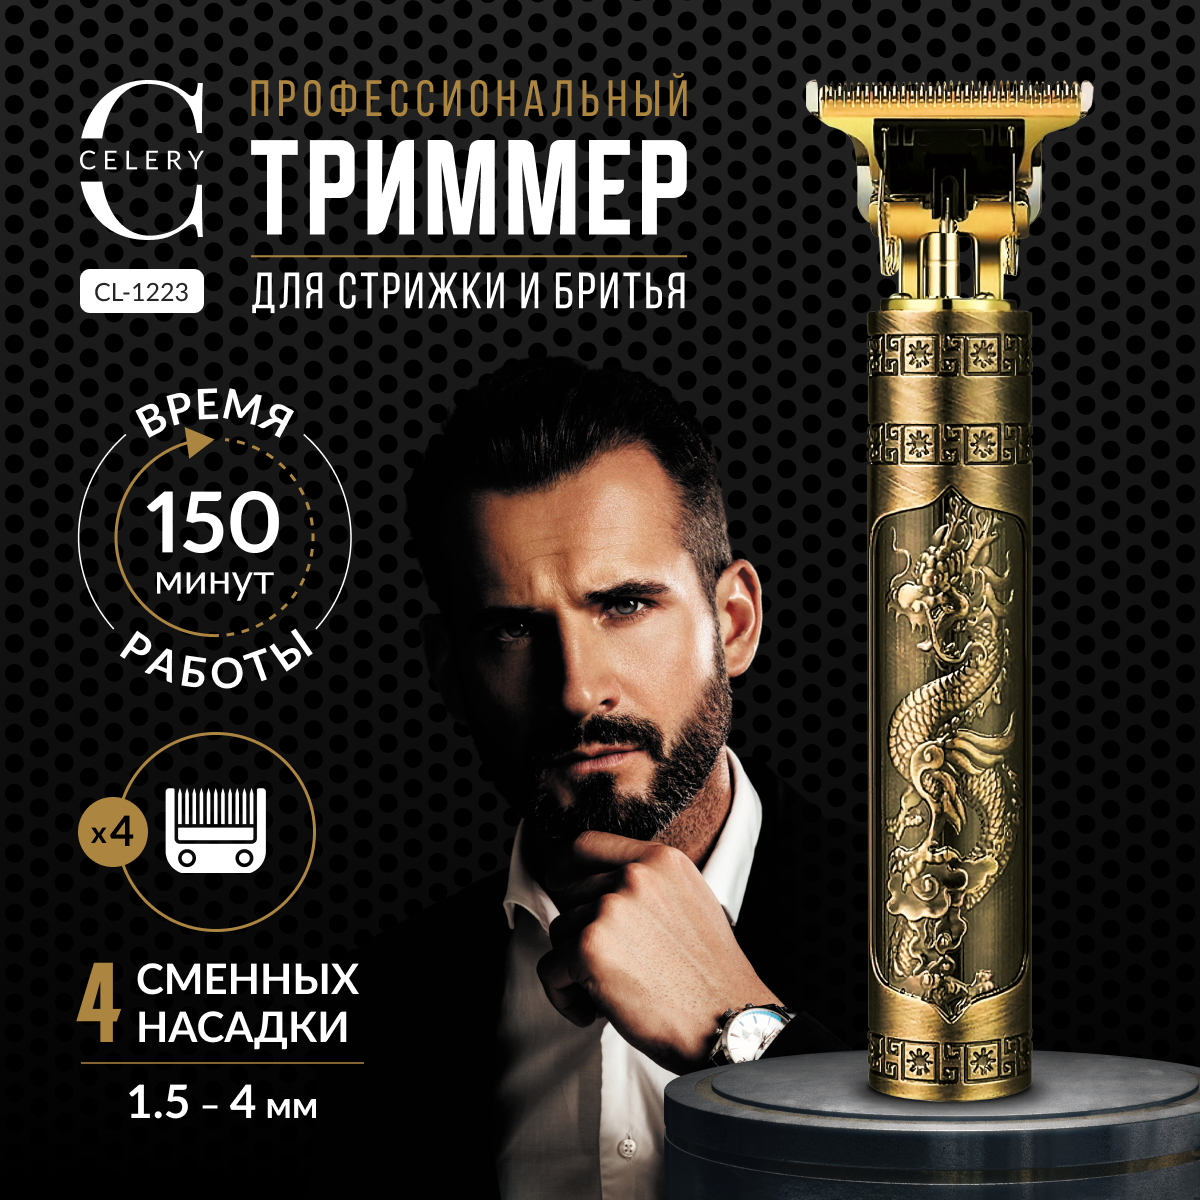 Триммер для волос, бороды и усов купить бытовую технику с быстрой доставкой на Яндекс Маркете